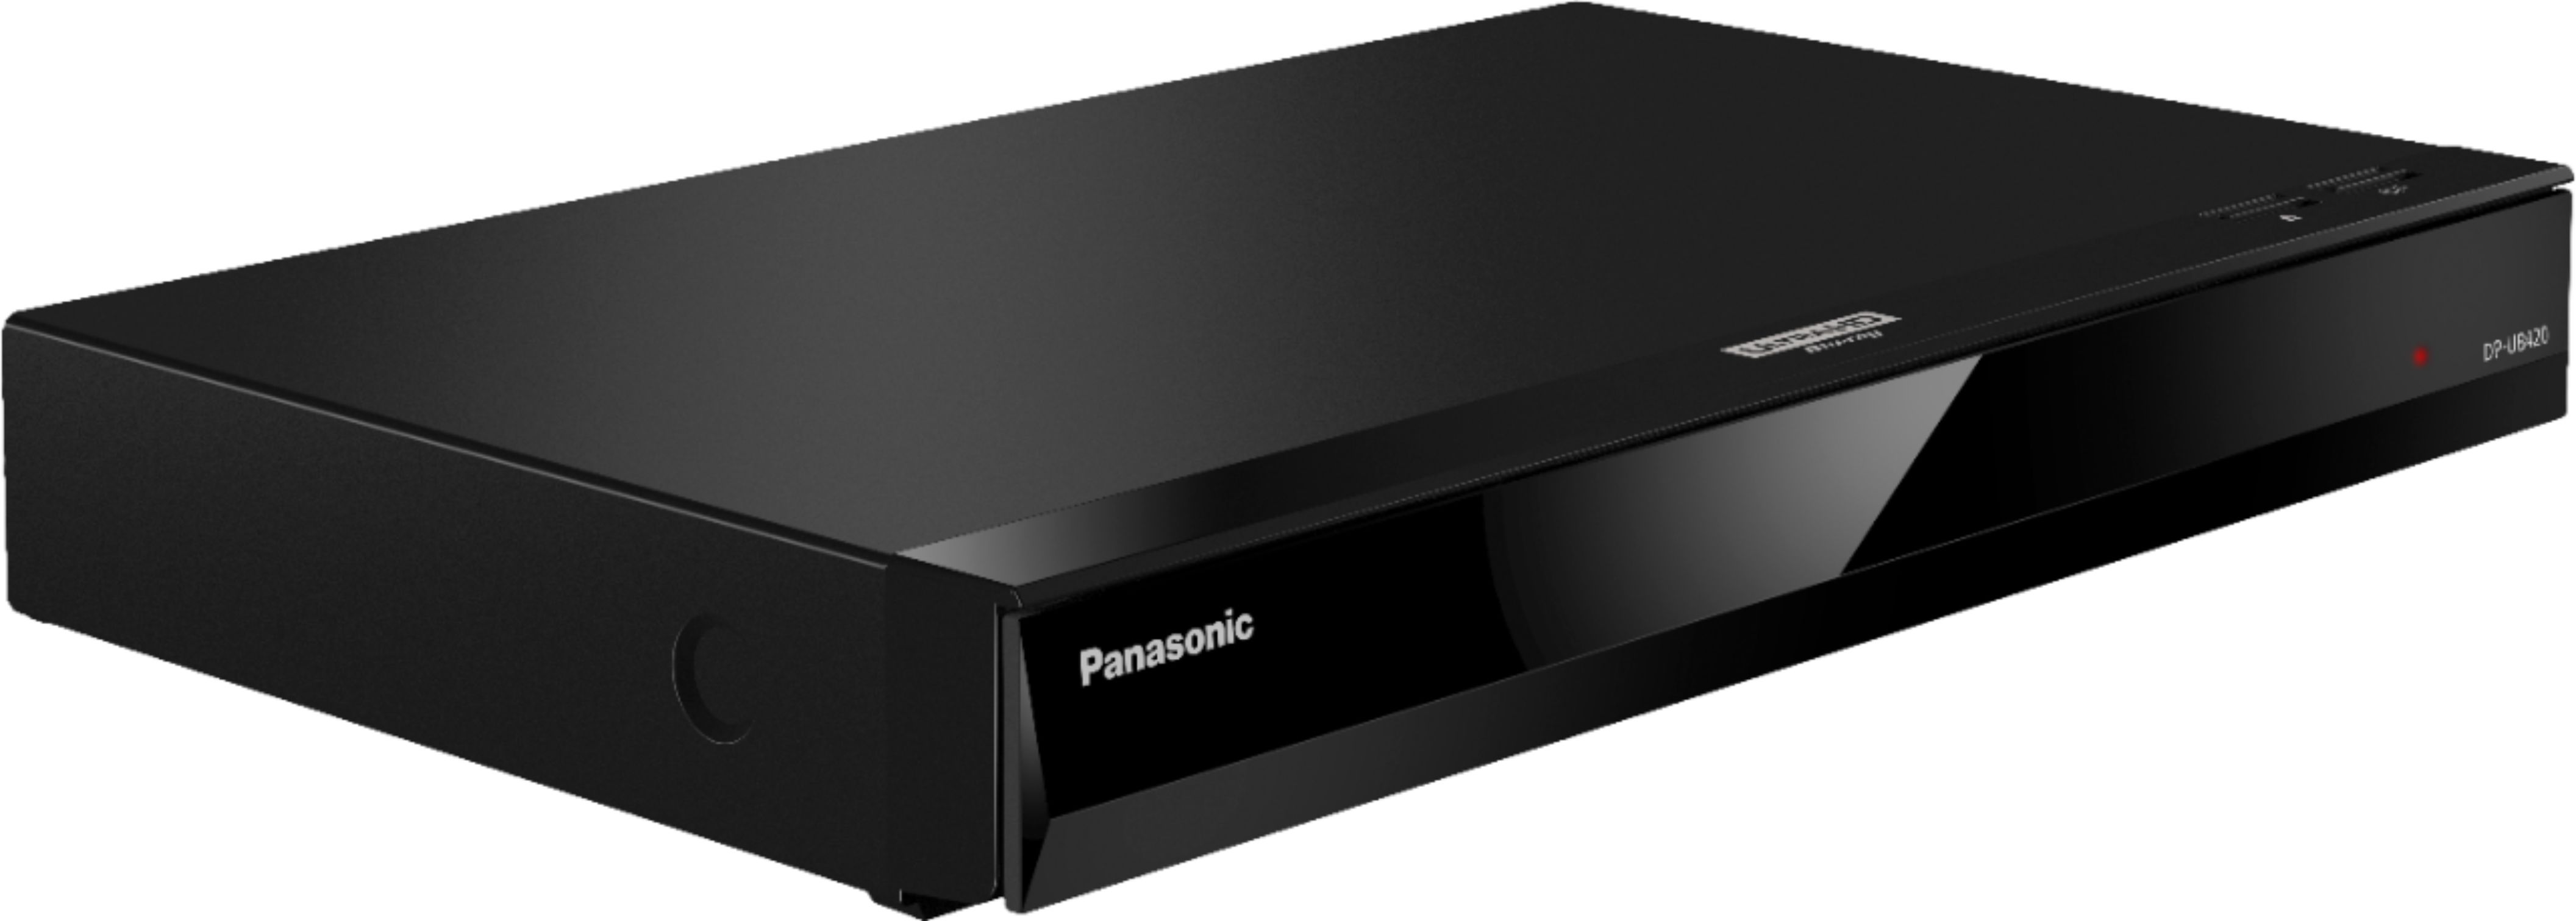 Angle View: Panasonic - Streaming 4K Ultra HD Hi-Res Audio DVD/CD/3D Wi-Fi Built-In Blu-Ray Player, DP-UB420-K - Black